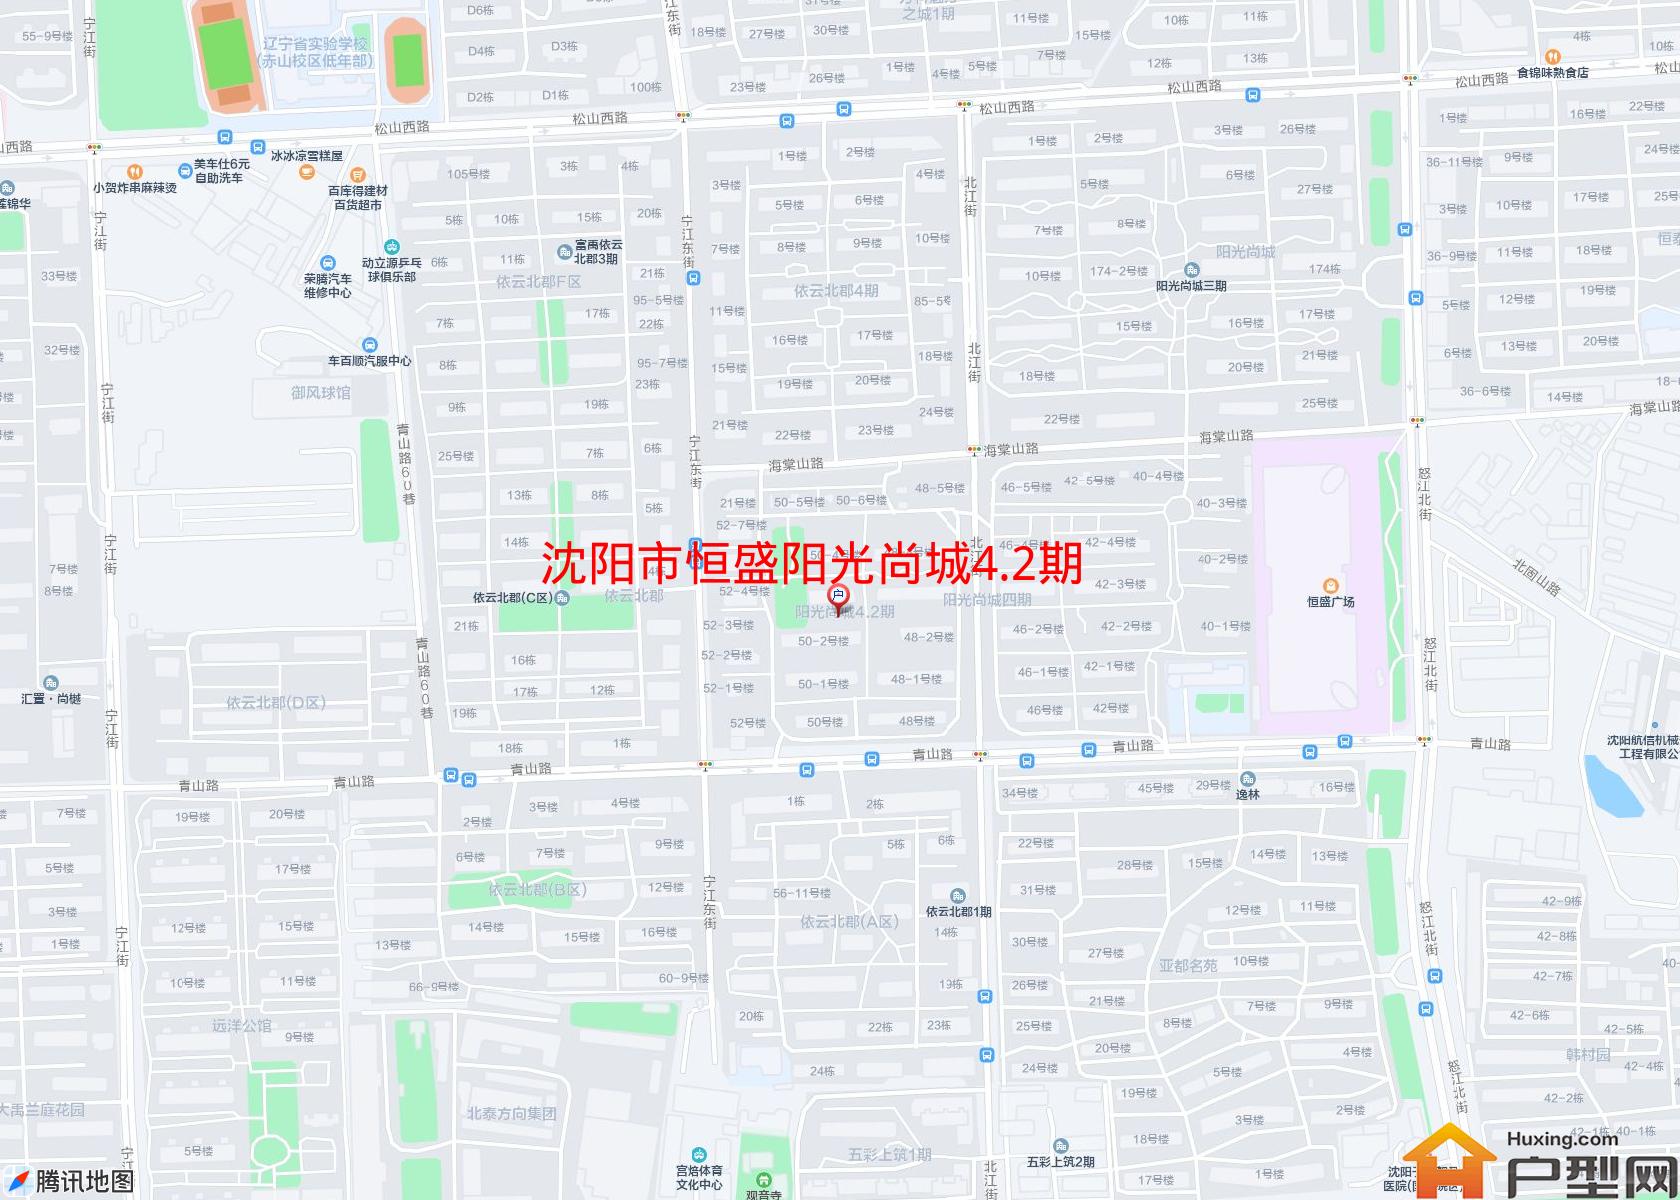 恒盛阳光尚城4.2期小区 - 户型网